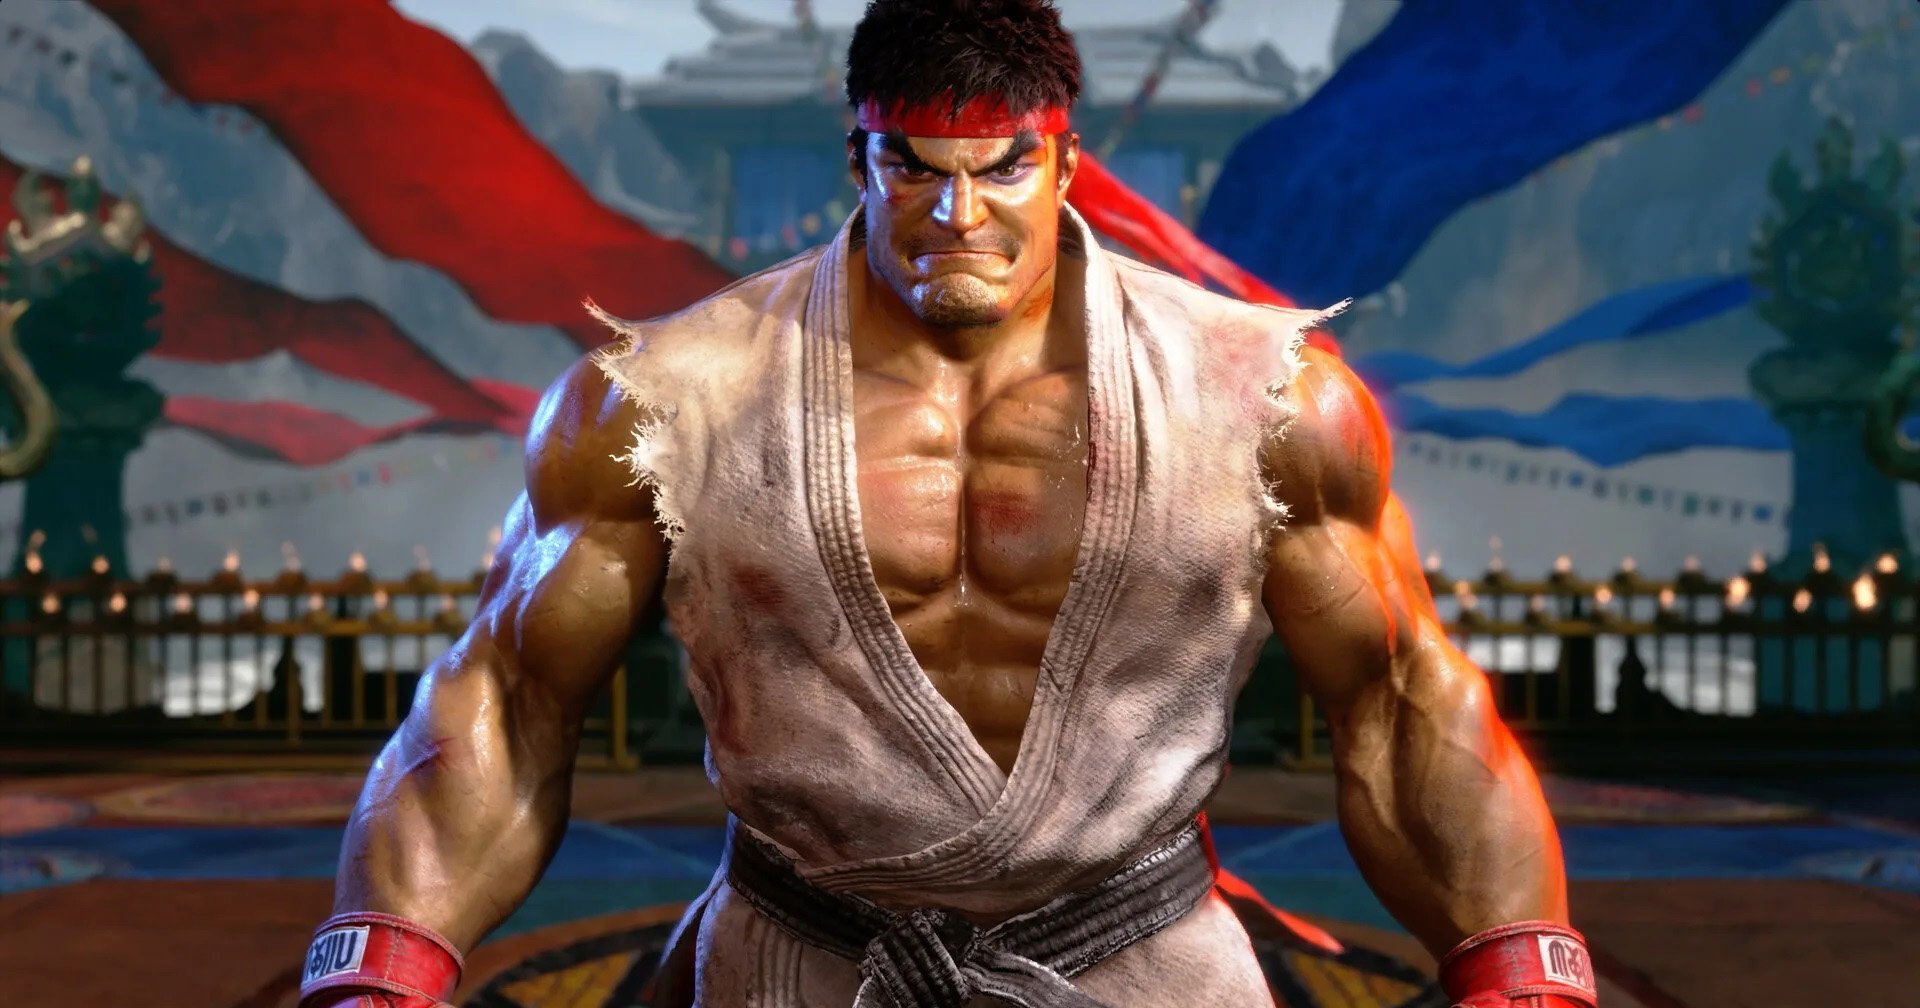 Sony ลุยรีบูต ‘Street Fighter’ ไลฟ์แอ็กชัน แม้ผู้กำกับถอนตัว: ประกาศกำหนดฉาย ปี 2026